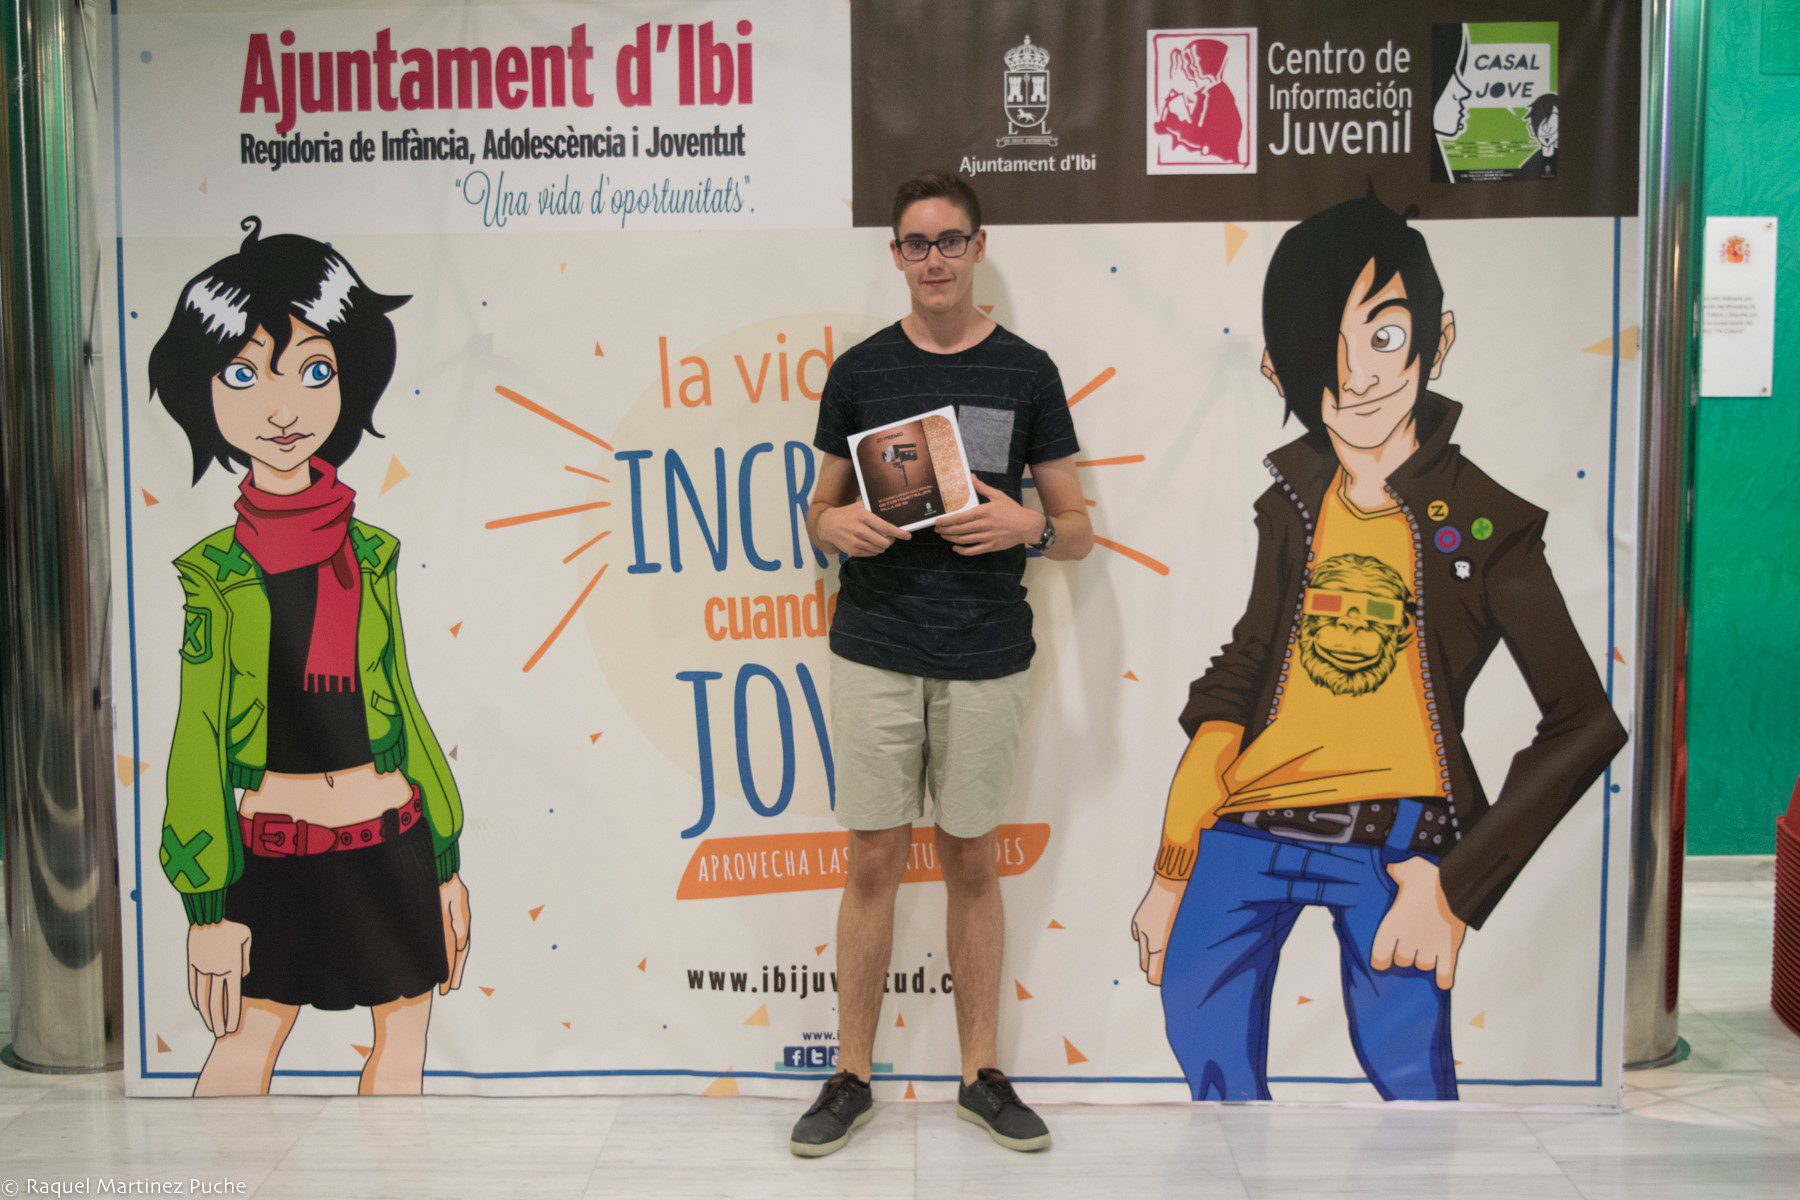 El joven José Luis Martínez Puche, segundo premio en un concurso de cortos de Ibi